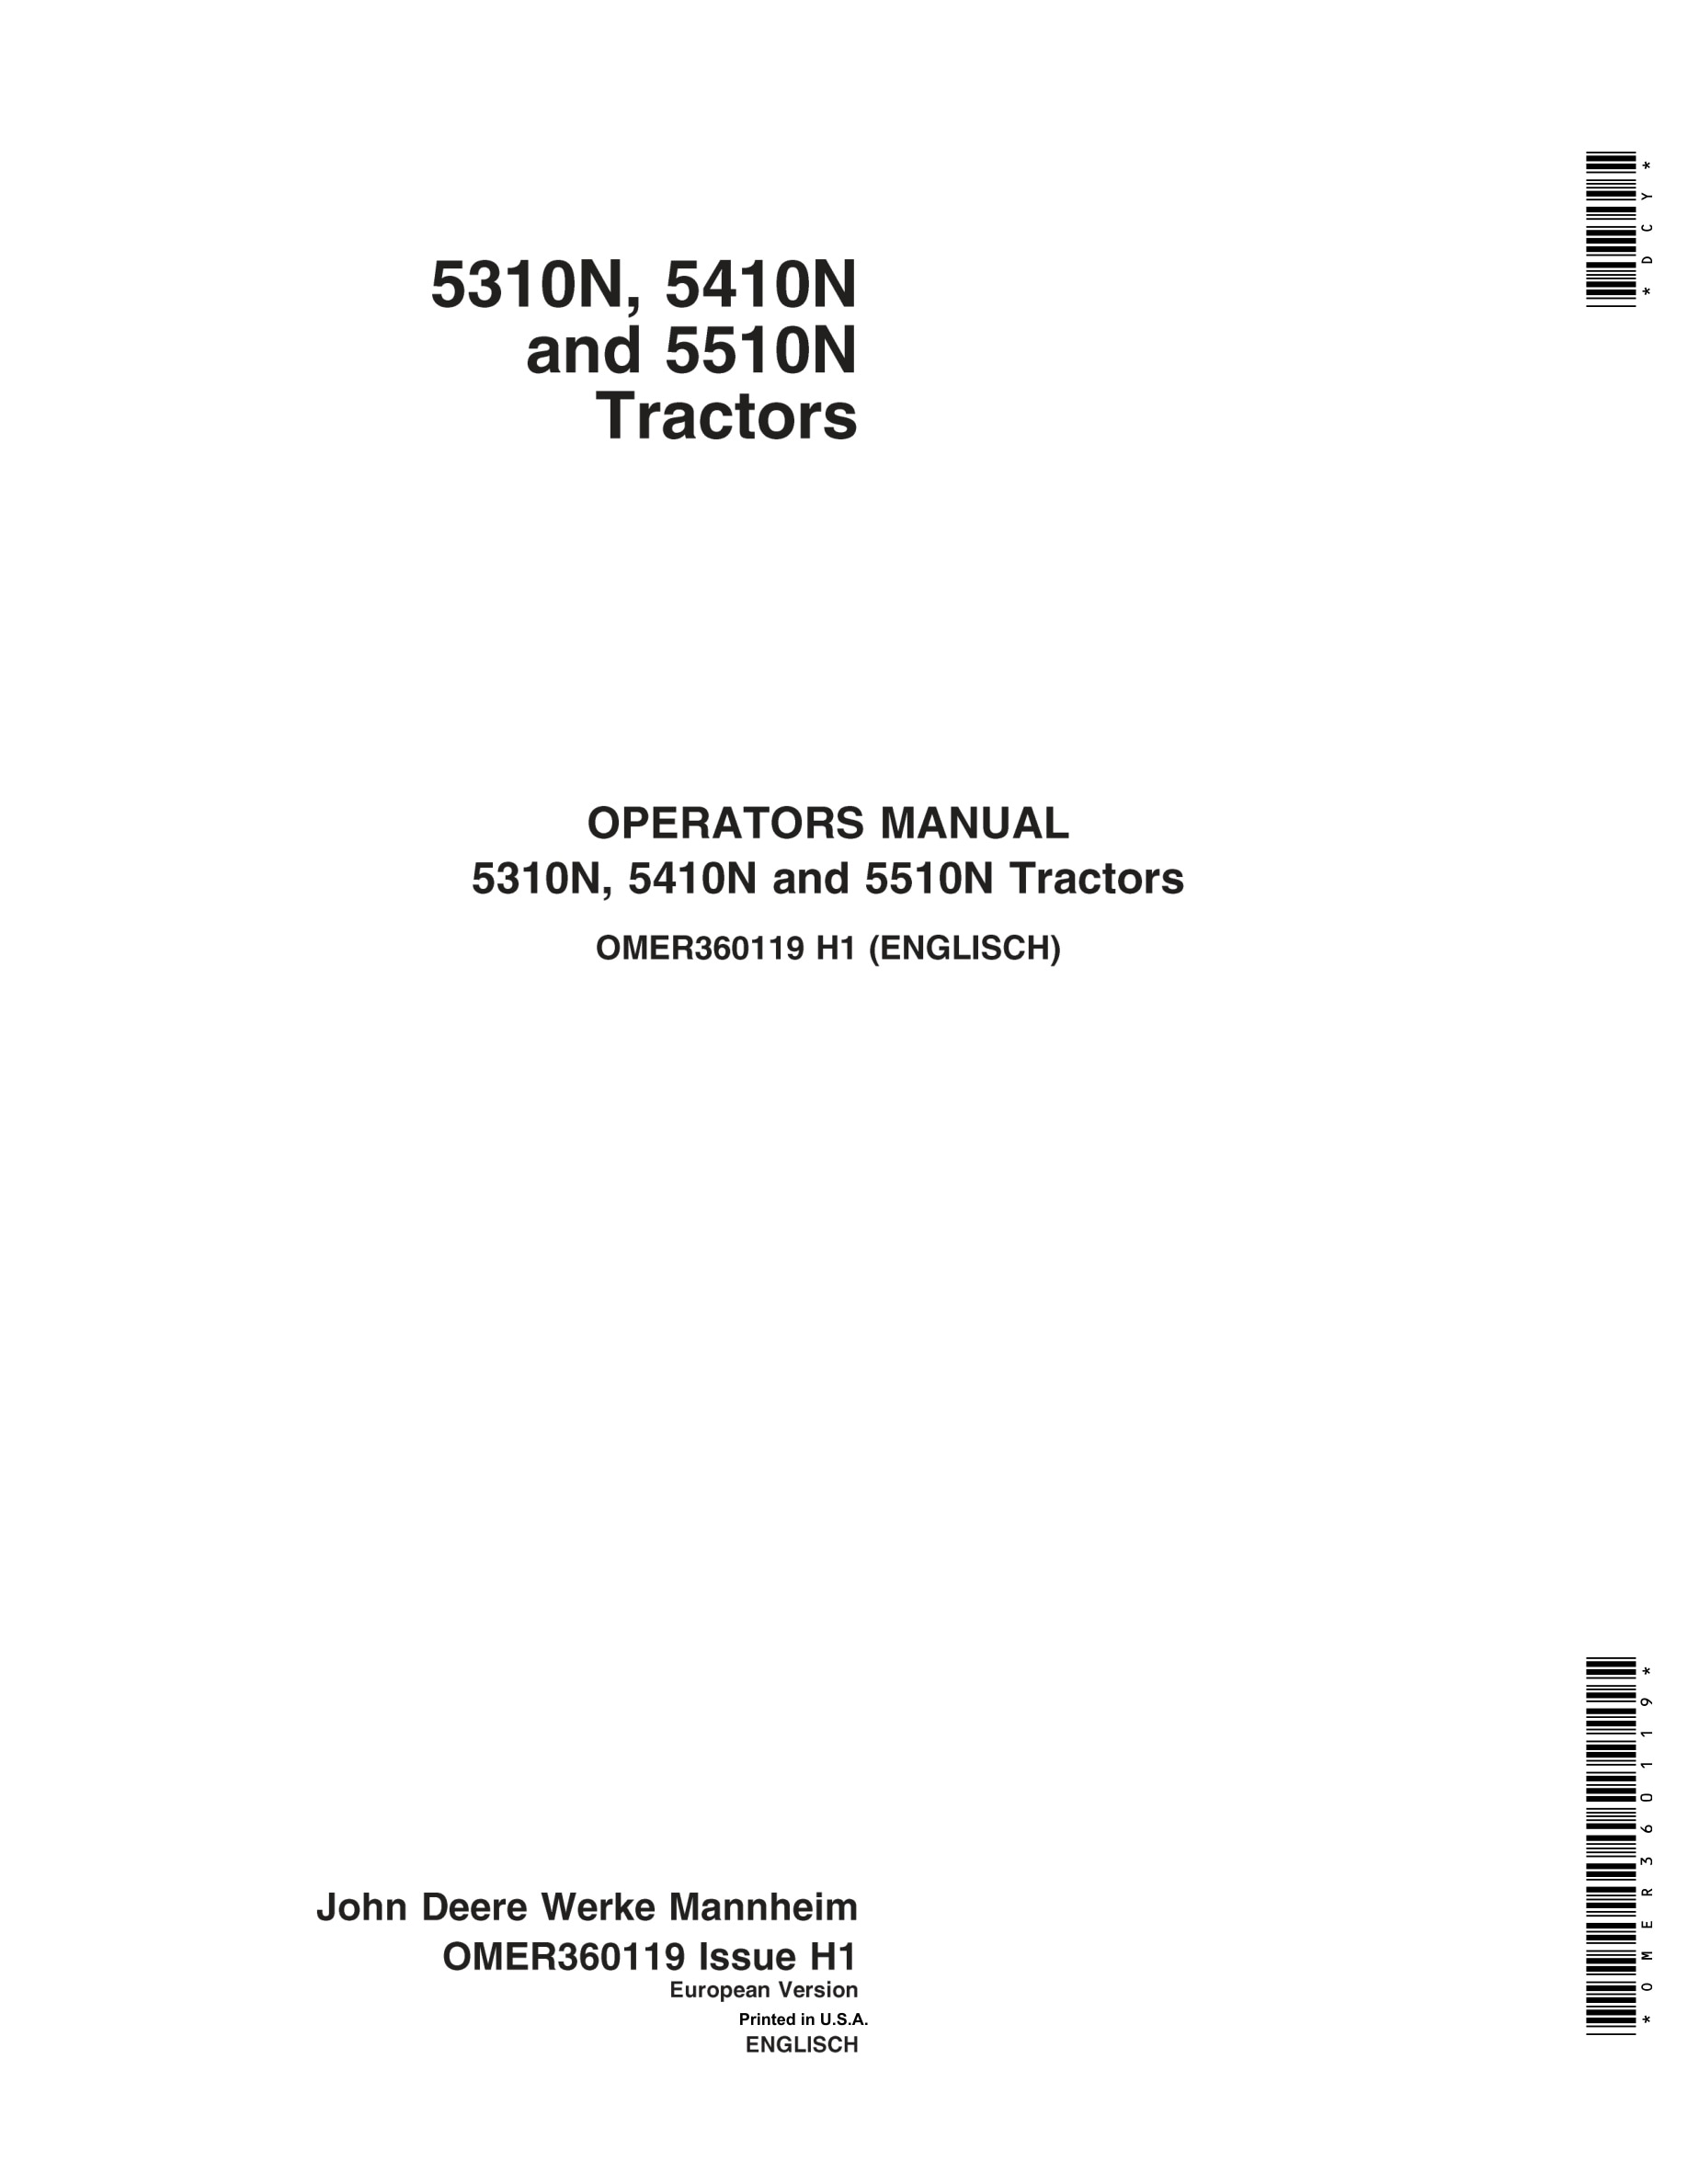 John Deere 5310n 5410n 5510n Tractors Operator Manuals OMER360119-1